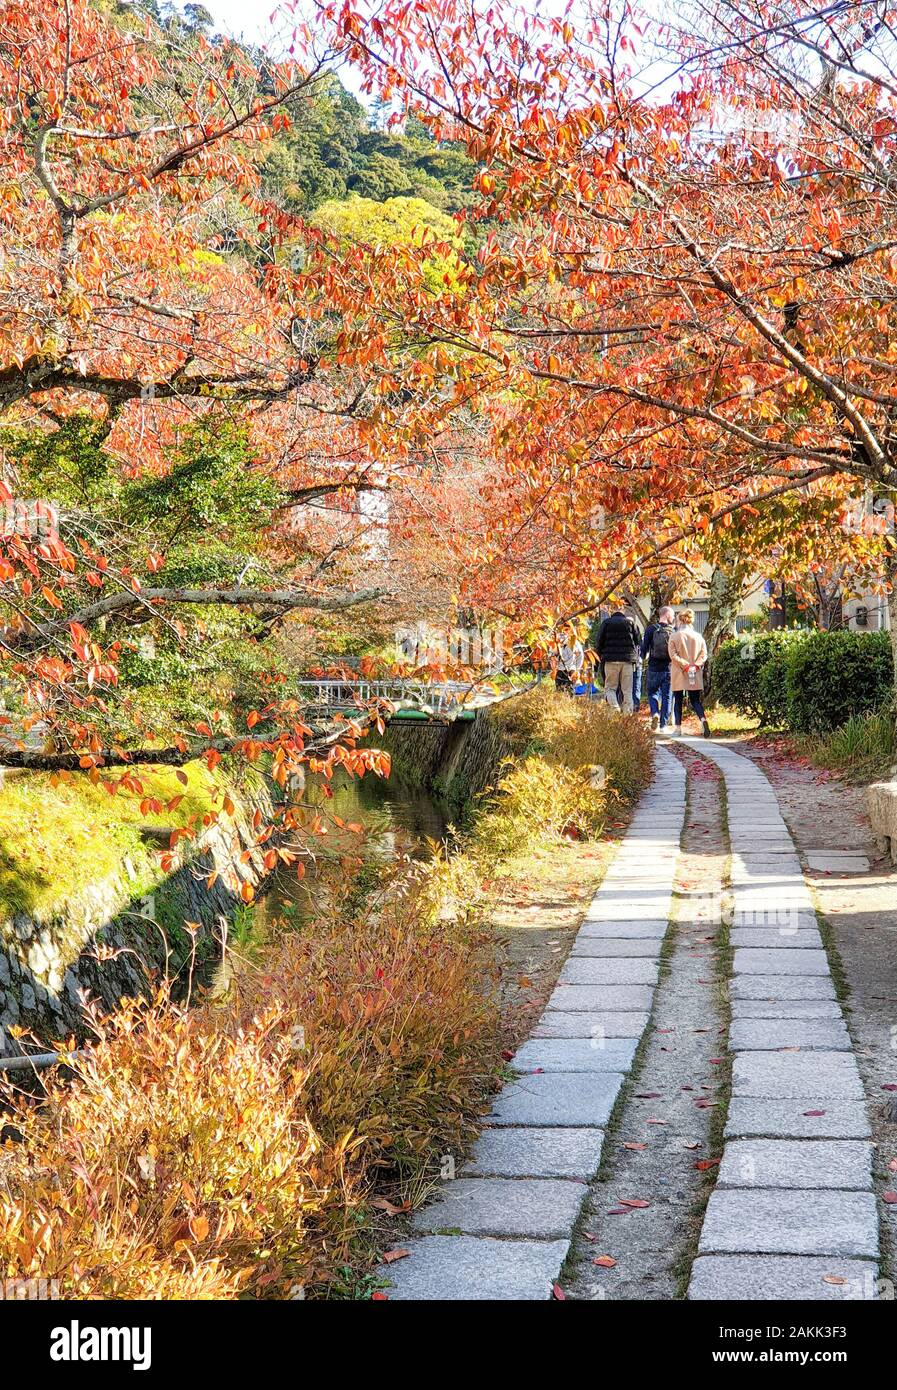 Philosoph's Walk (japanischer Name: Tetsugaku no Michi) Pfad mit Cherry-Trees auf beiden Seiten einer der Kanal im Herbst - Kyoto, Japan Stockfoto